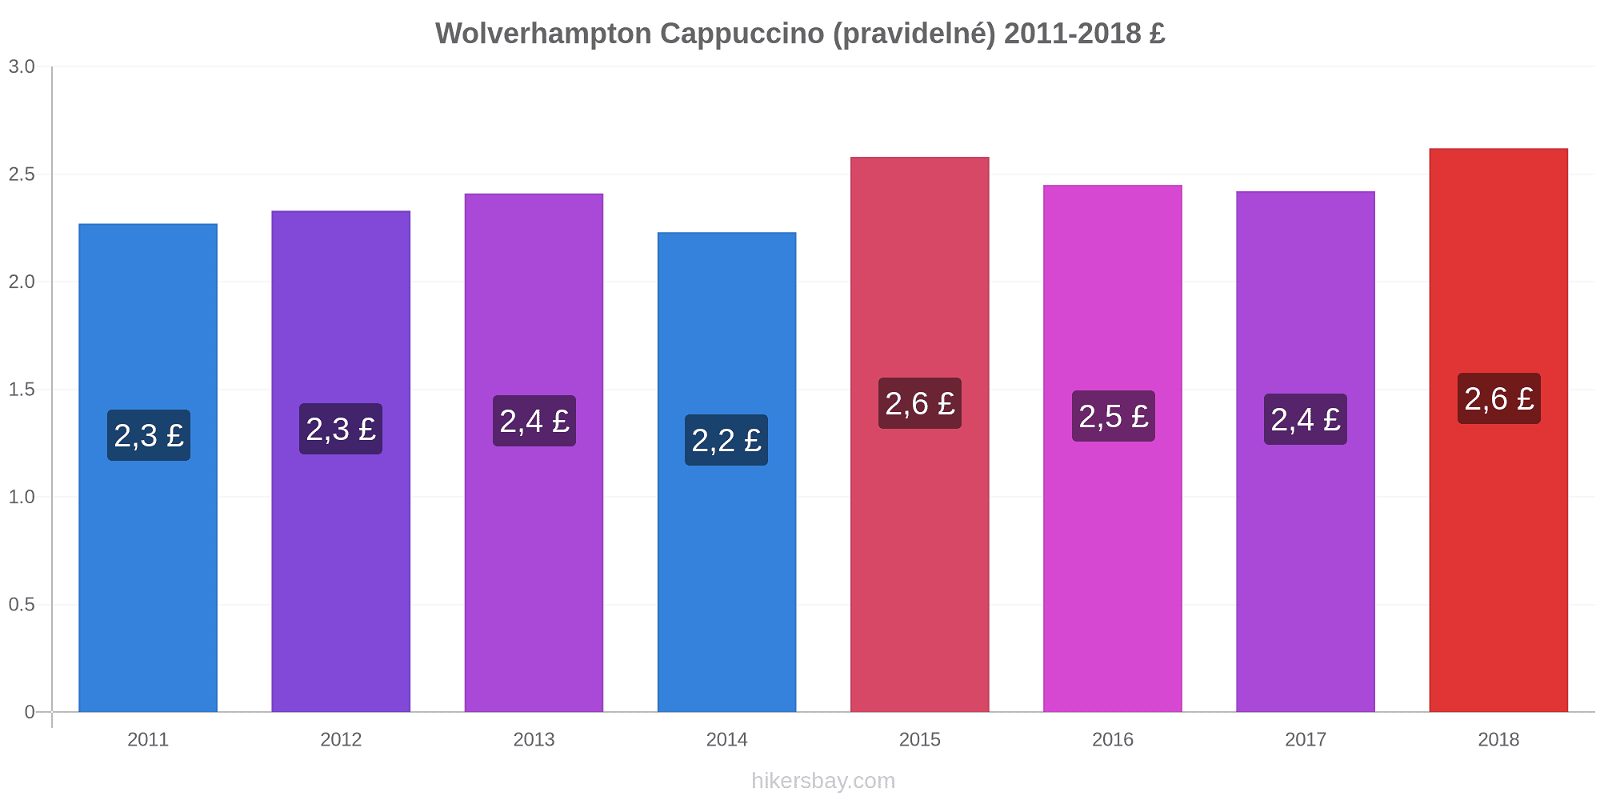 Wolverhampton změny cen Cappuccino (pravidelné) hikersbay.com